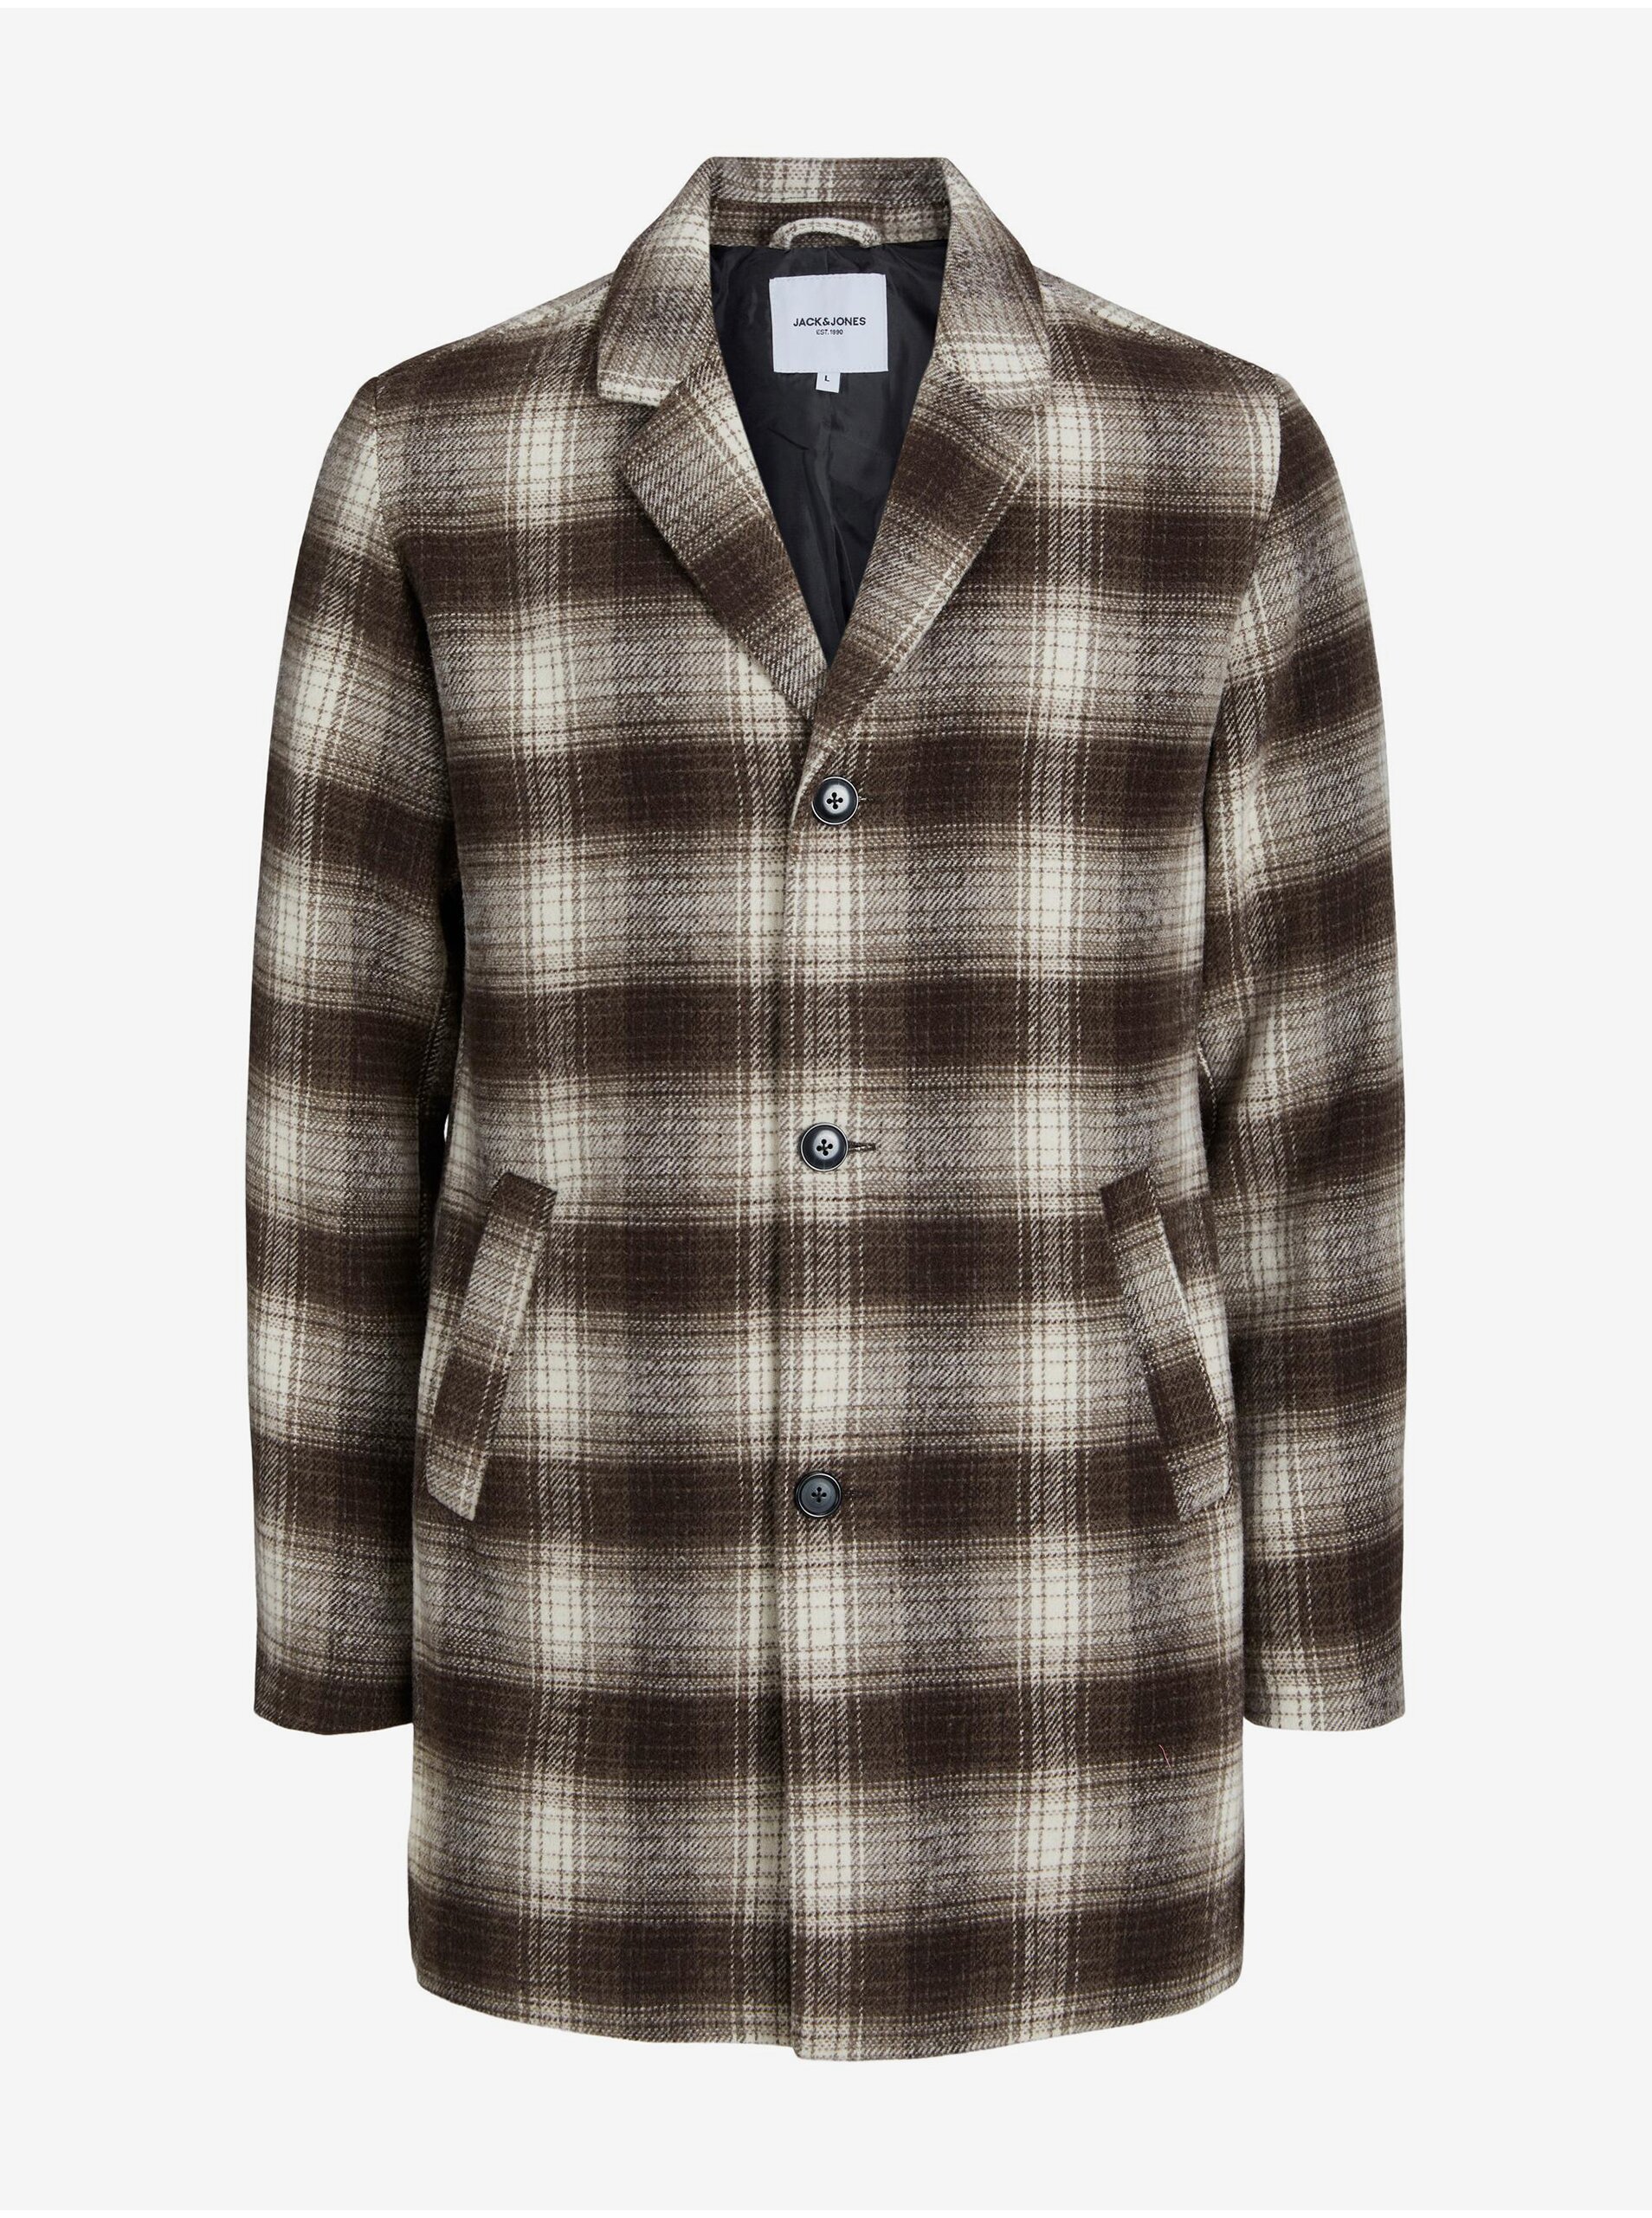 E-shop Hnedý pánsky kockovaný kabát s prímesou vlny Jack & Jones Zac